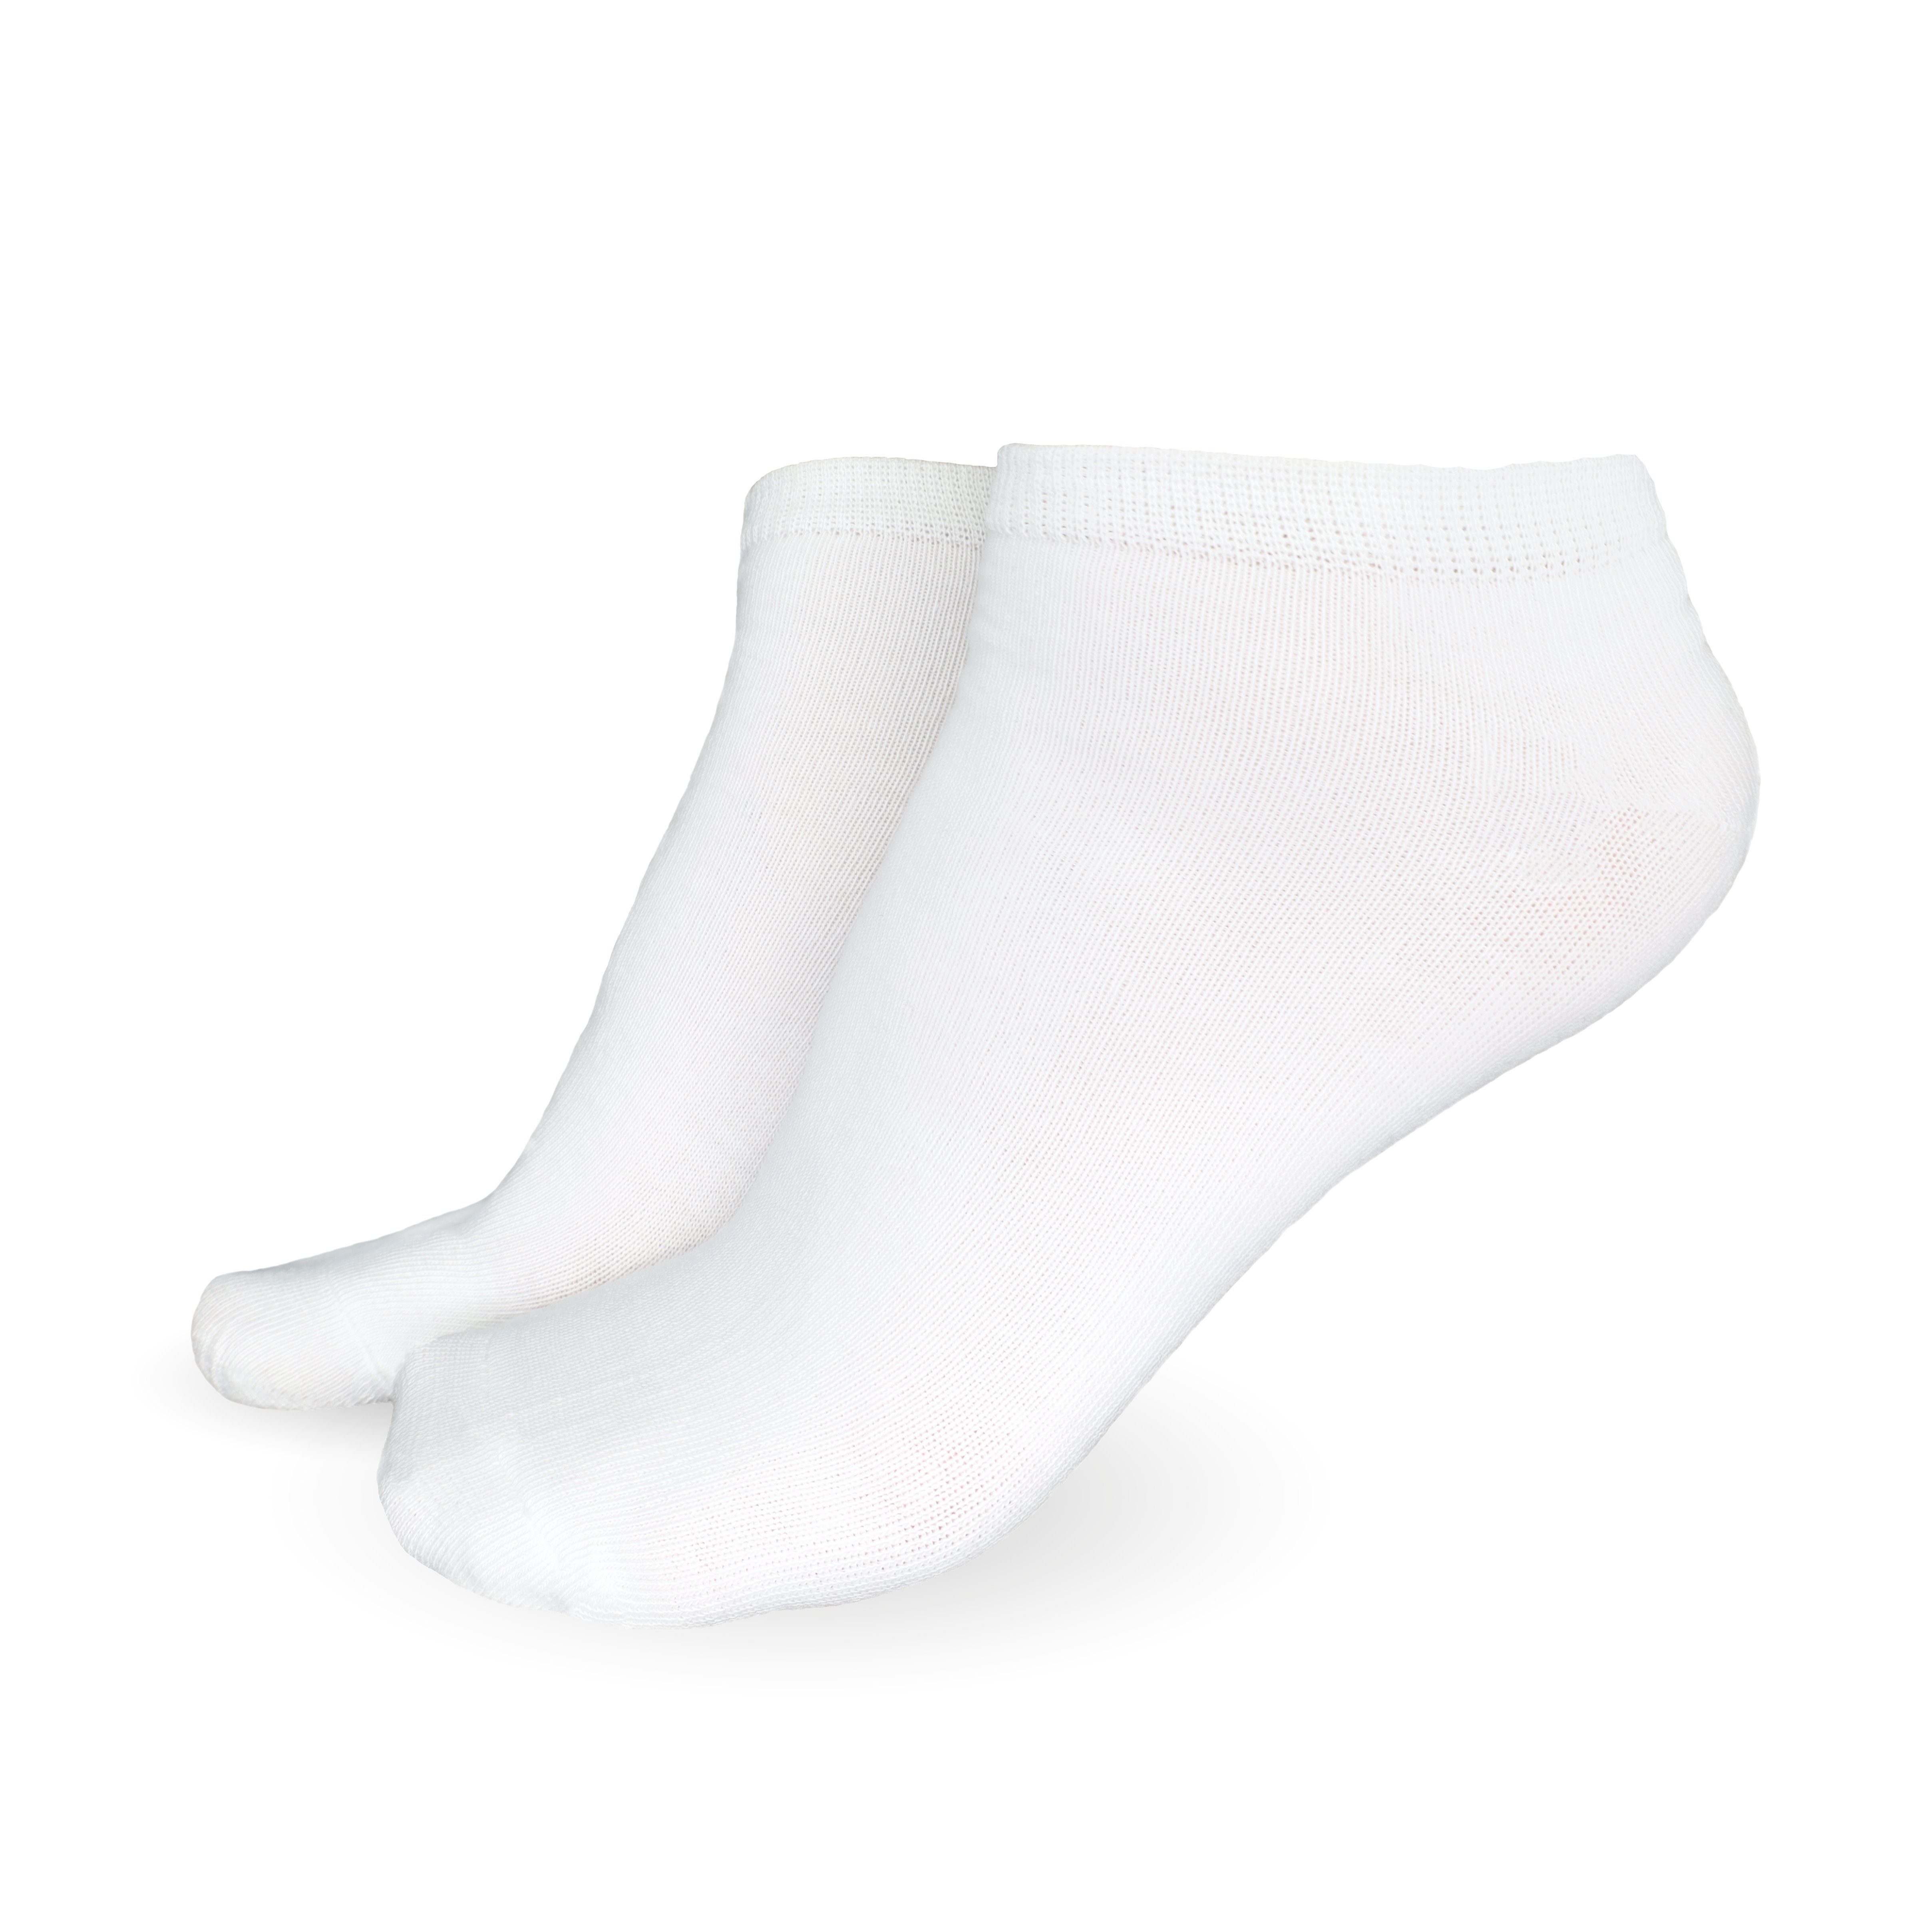 & Sneaker 5-20 Unisex 10x Damen Freizeitsocken Socken Weiß 35-46, Paar) aus Baumwolle atmungsaktive SO.I Herren Socken (Größen